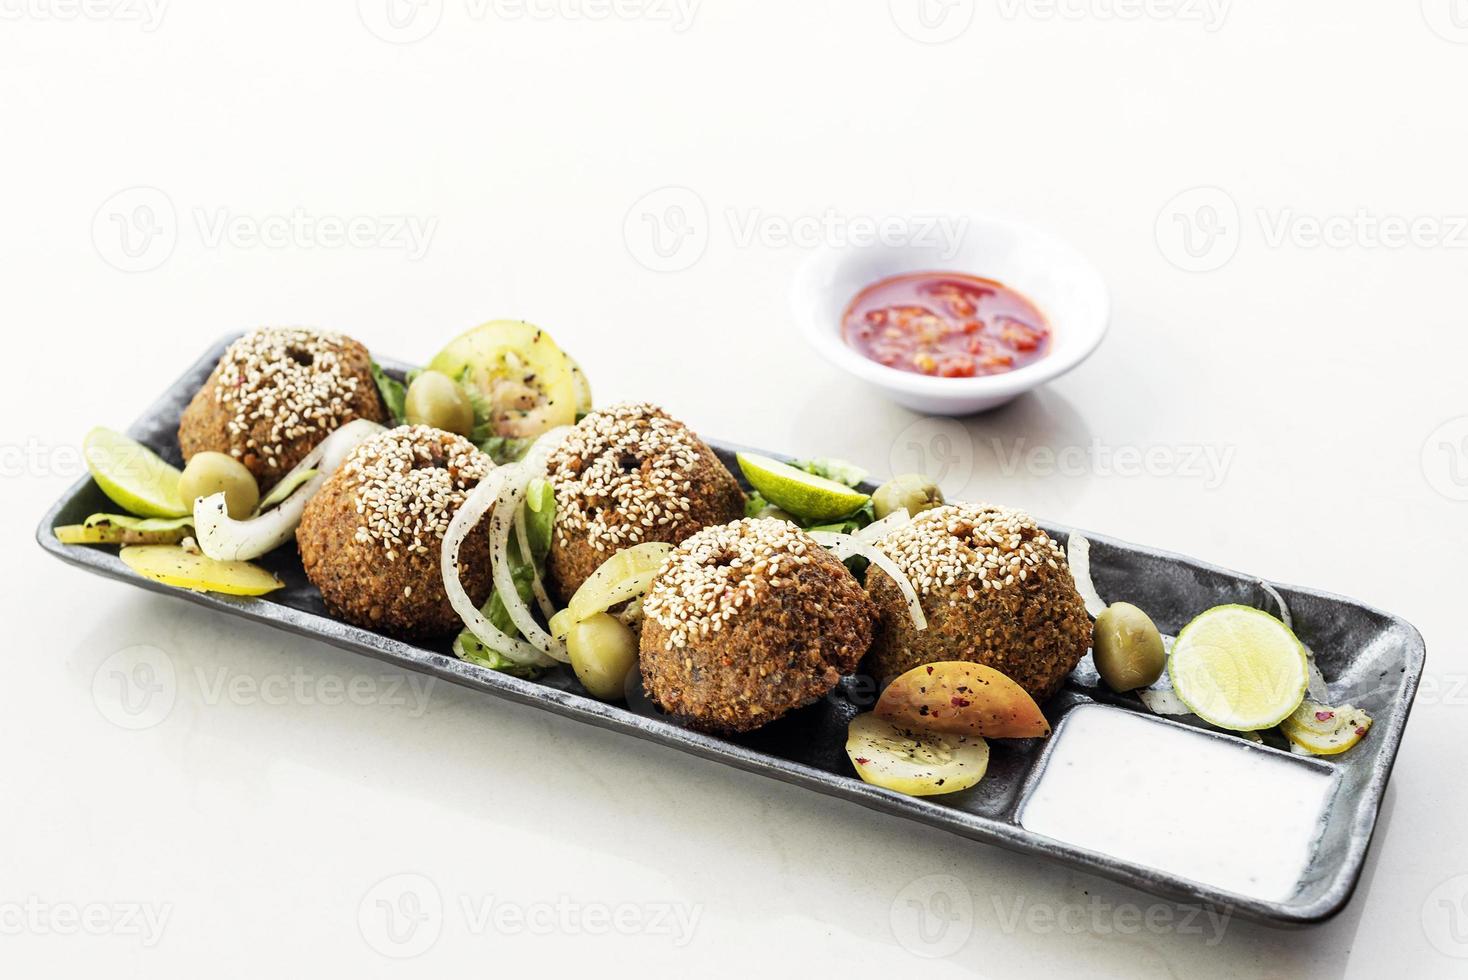 kikärts falafel traditionell mat mellanmål maträtt tallrik starter set foto